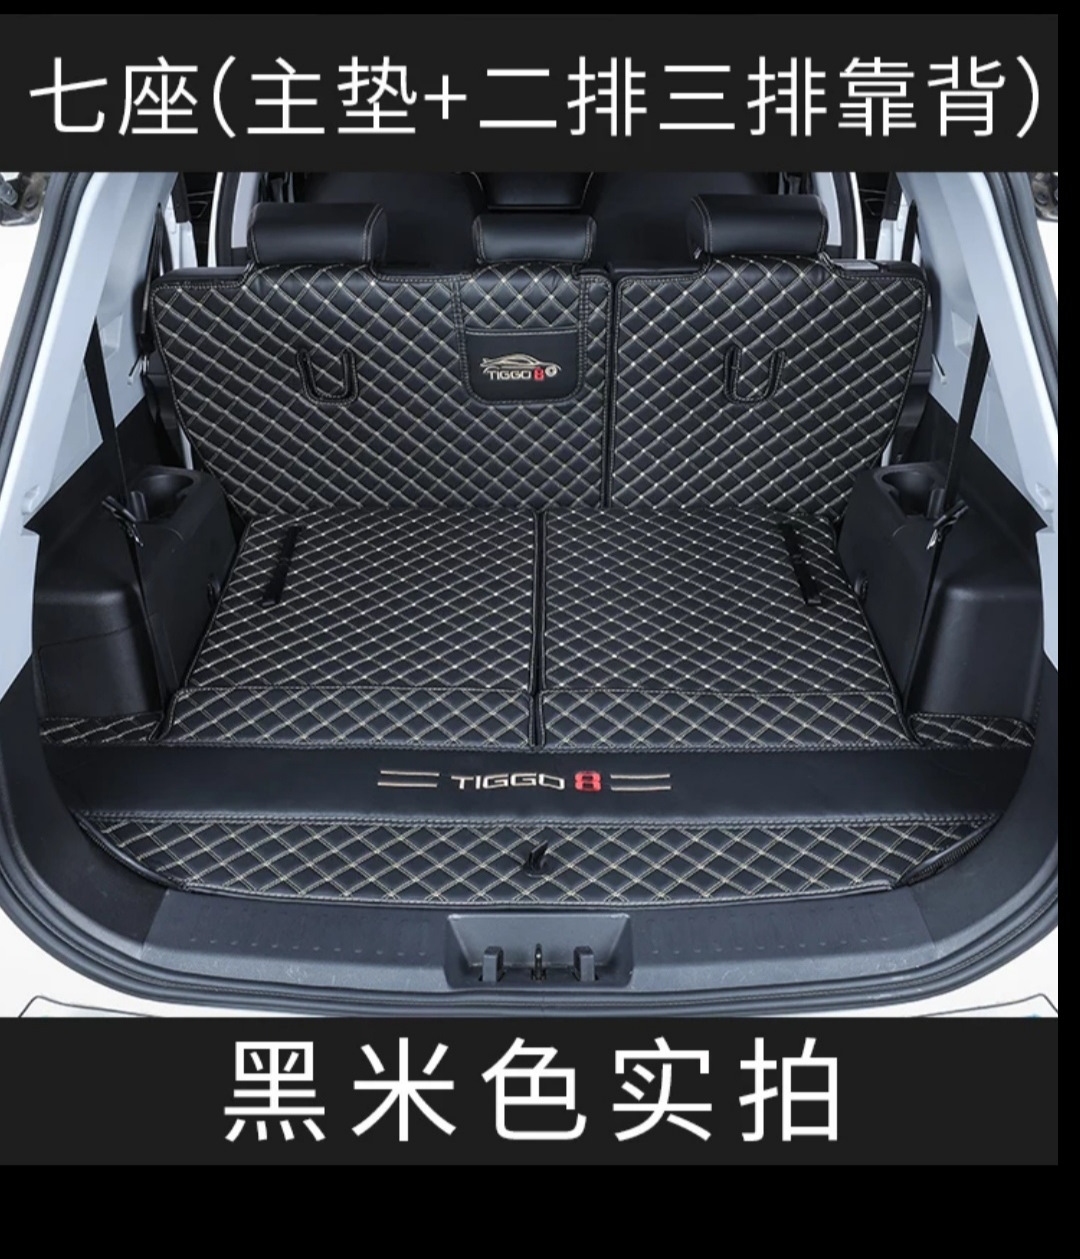 Коврики чери тигго 8 про. Chery Tiggo 8 багажник. Chery Tiggo 7 Pro багажник. Chery Tiggo 8 Pro Pro багажник. Tiggo 7 Pro багажник.